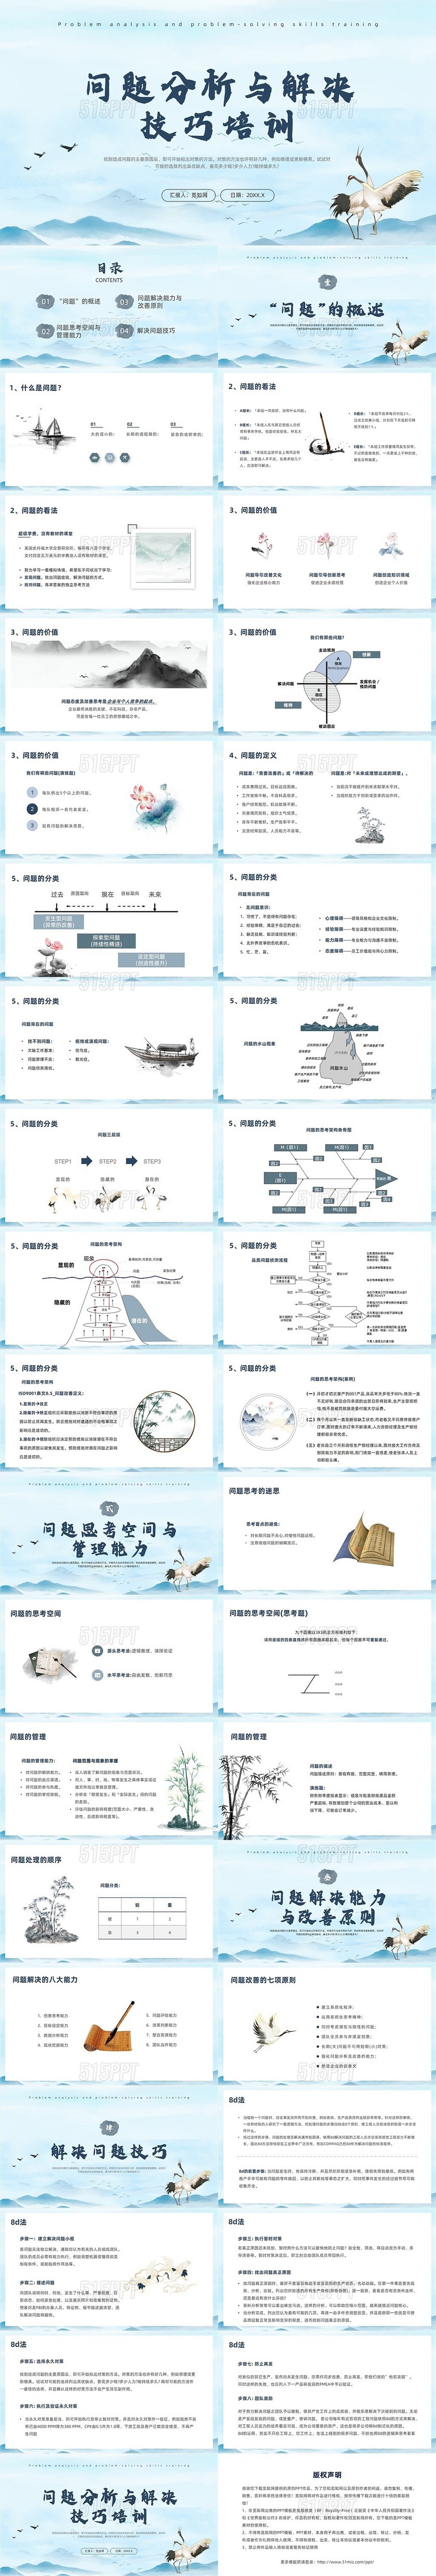 蓝色中国风问题分析与解决技巧培训